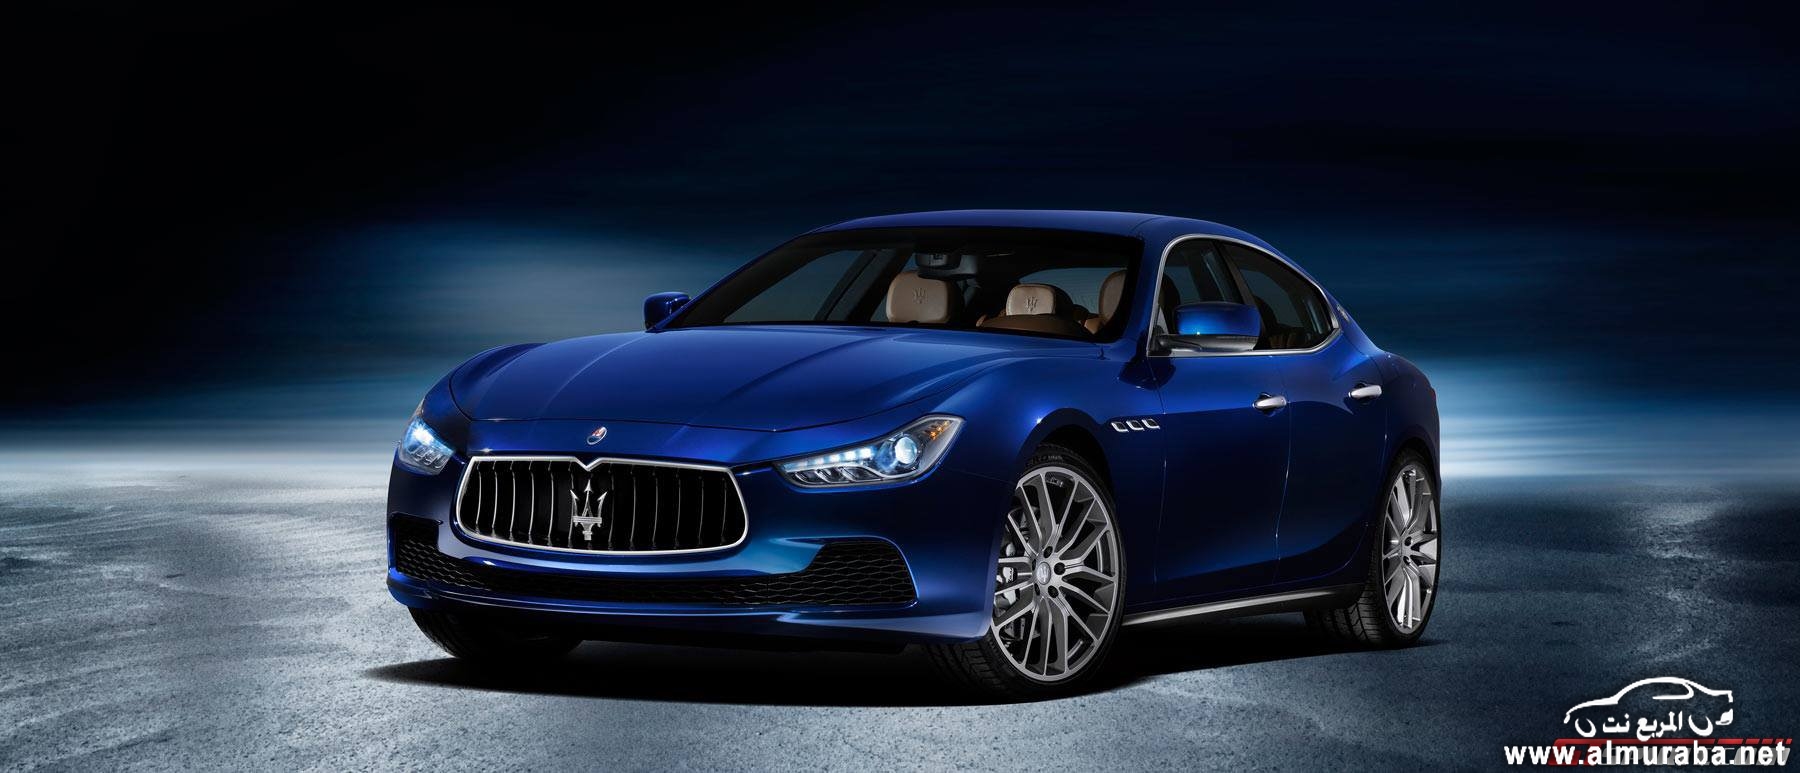 نسخة جديدة من مازيراتي جيبلي باللون الازرق القاتم Maserati Ghibli Blu 19